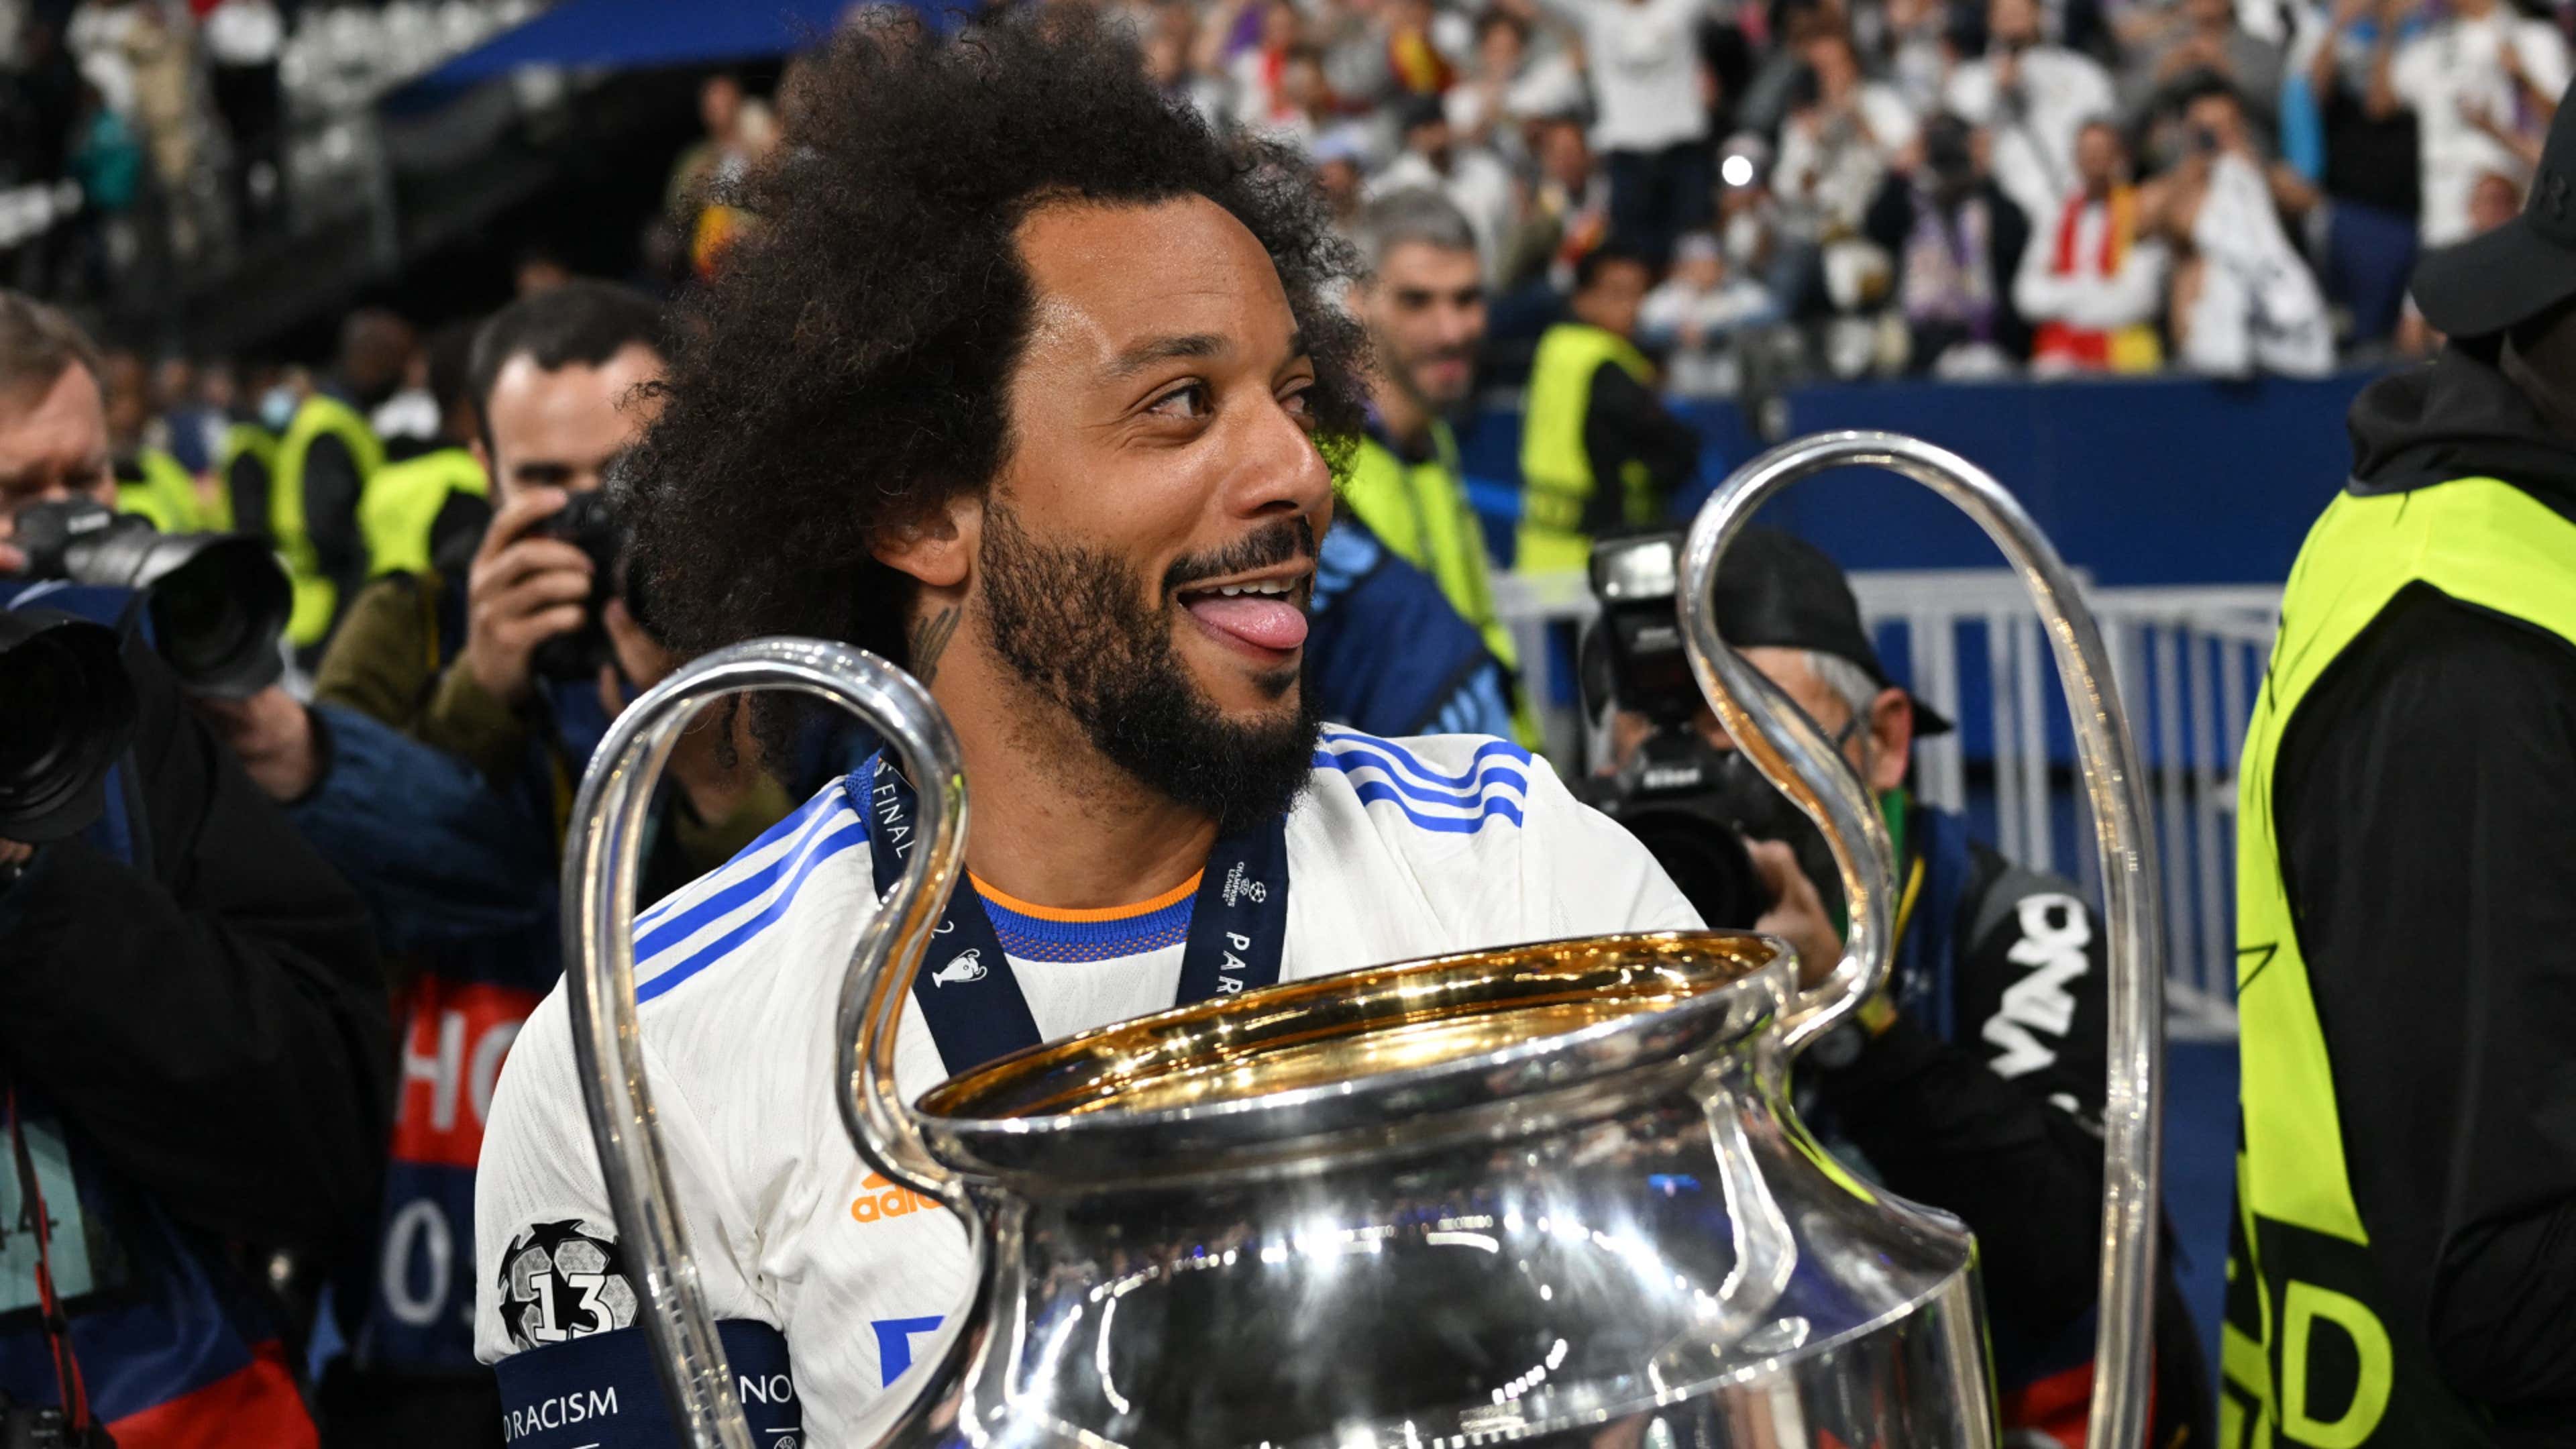 Champions League: veja o ranking de clubes que já conquistaram o título